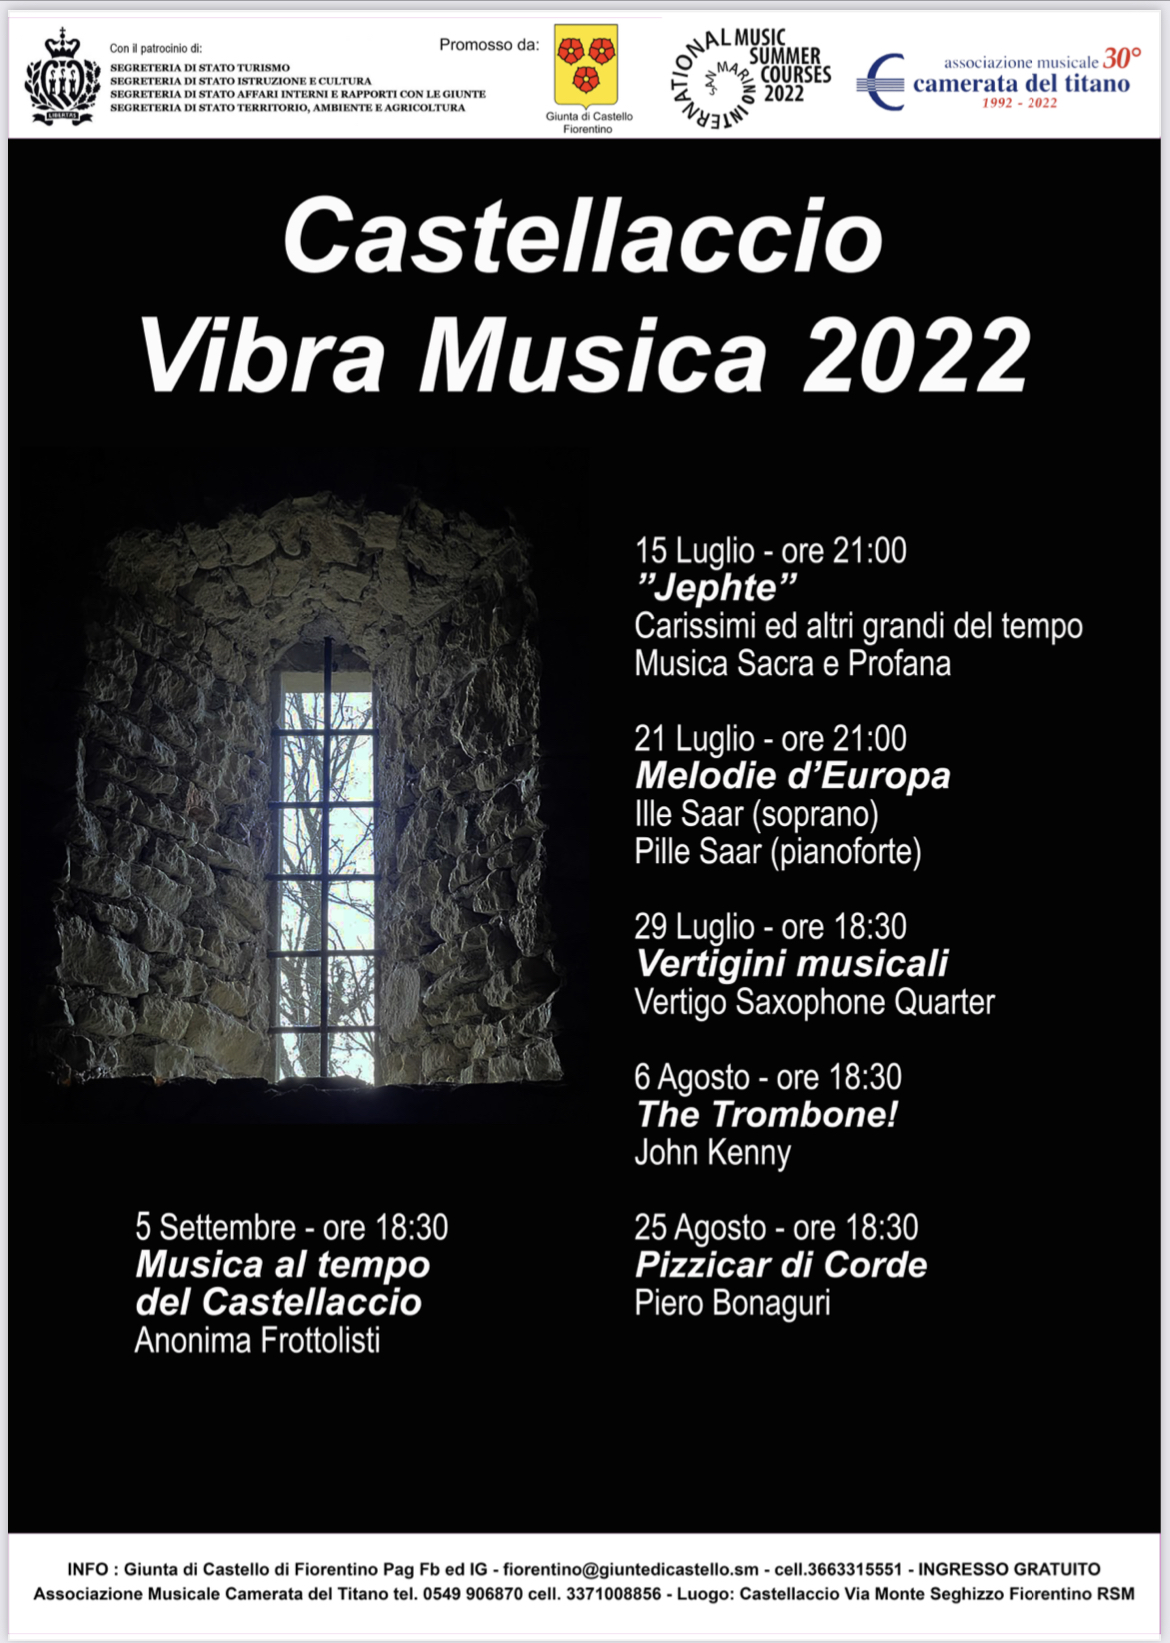 San Marino. Torna la musica al Castello di Fiorentino con “Castellaccio Vibra Musica”